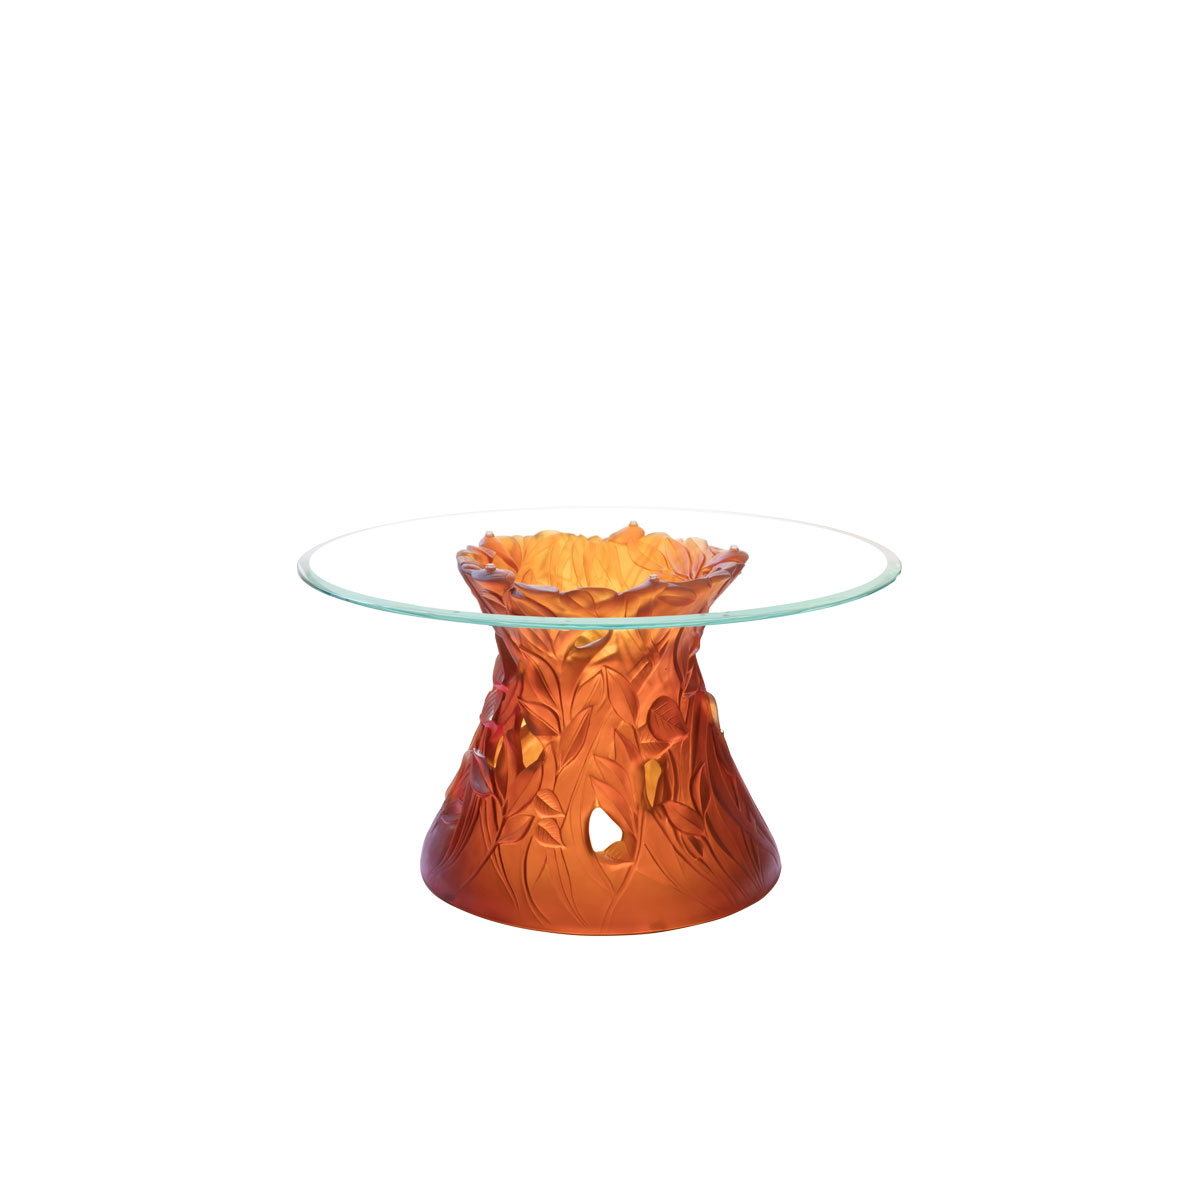 Daum Vegetal Coffee Table in Amber